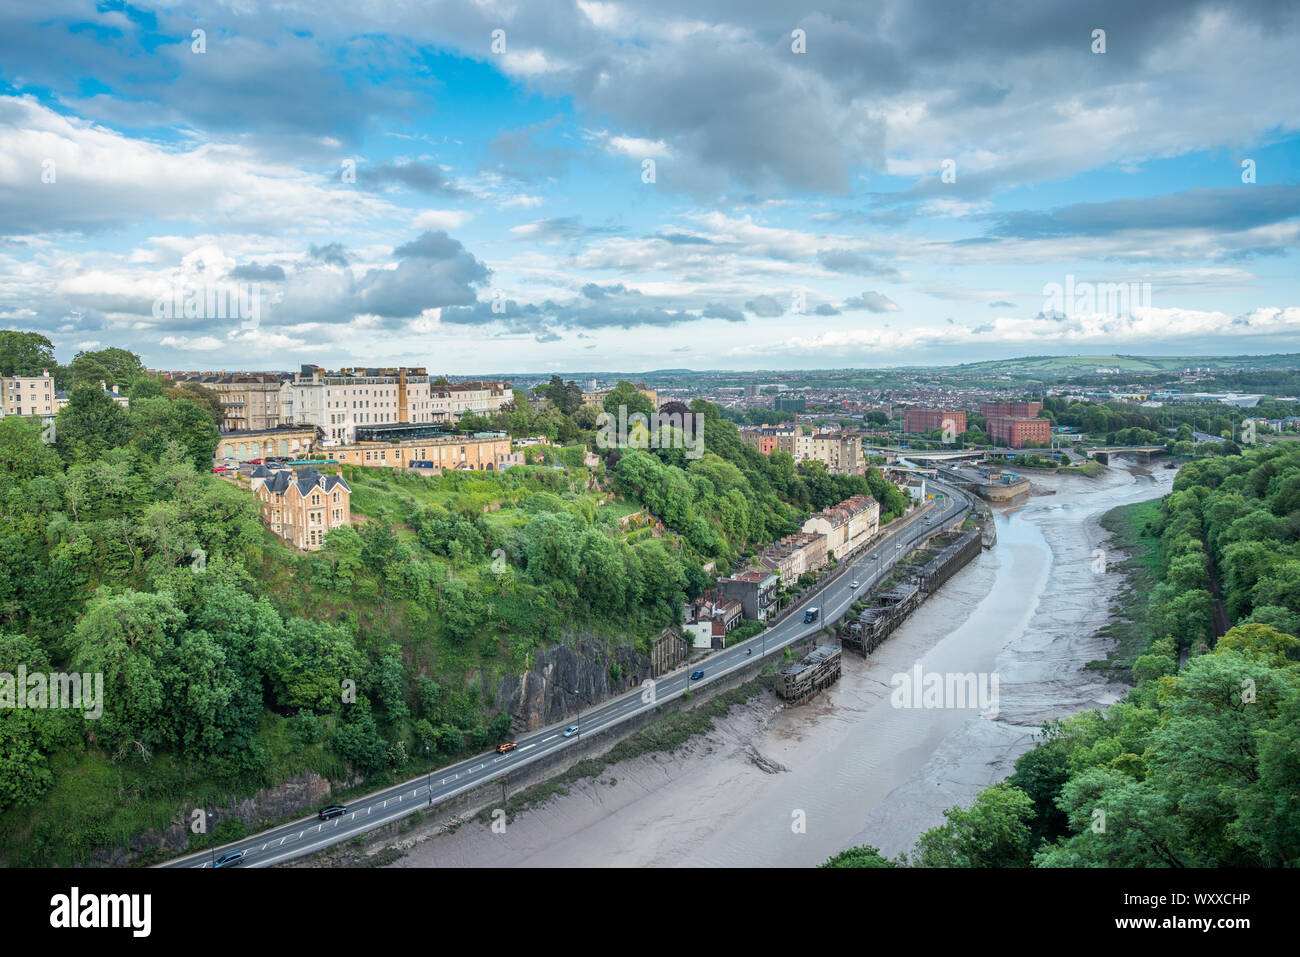 Ampia gamma di opinioni lungo il fiume Avon verso Hotwells da Clifton Suspension Bridge in Bristol, Avon, Inghilterra, Regno Unito. Foto Stock